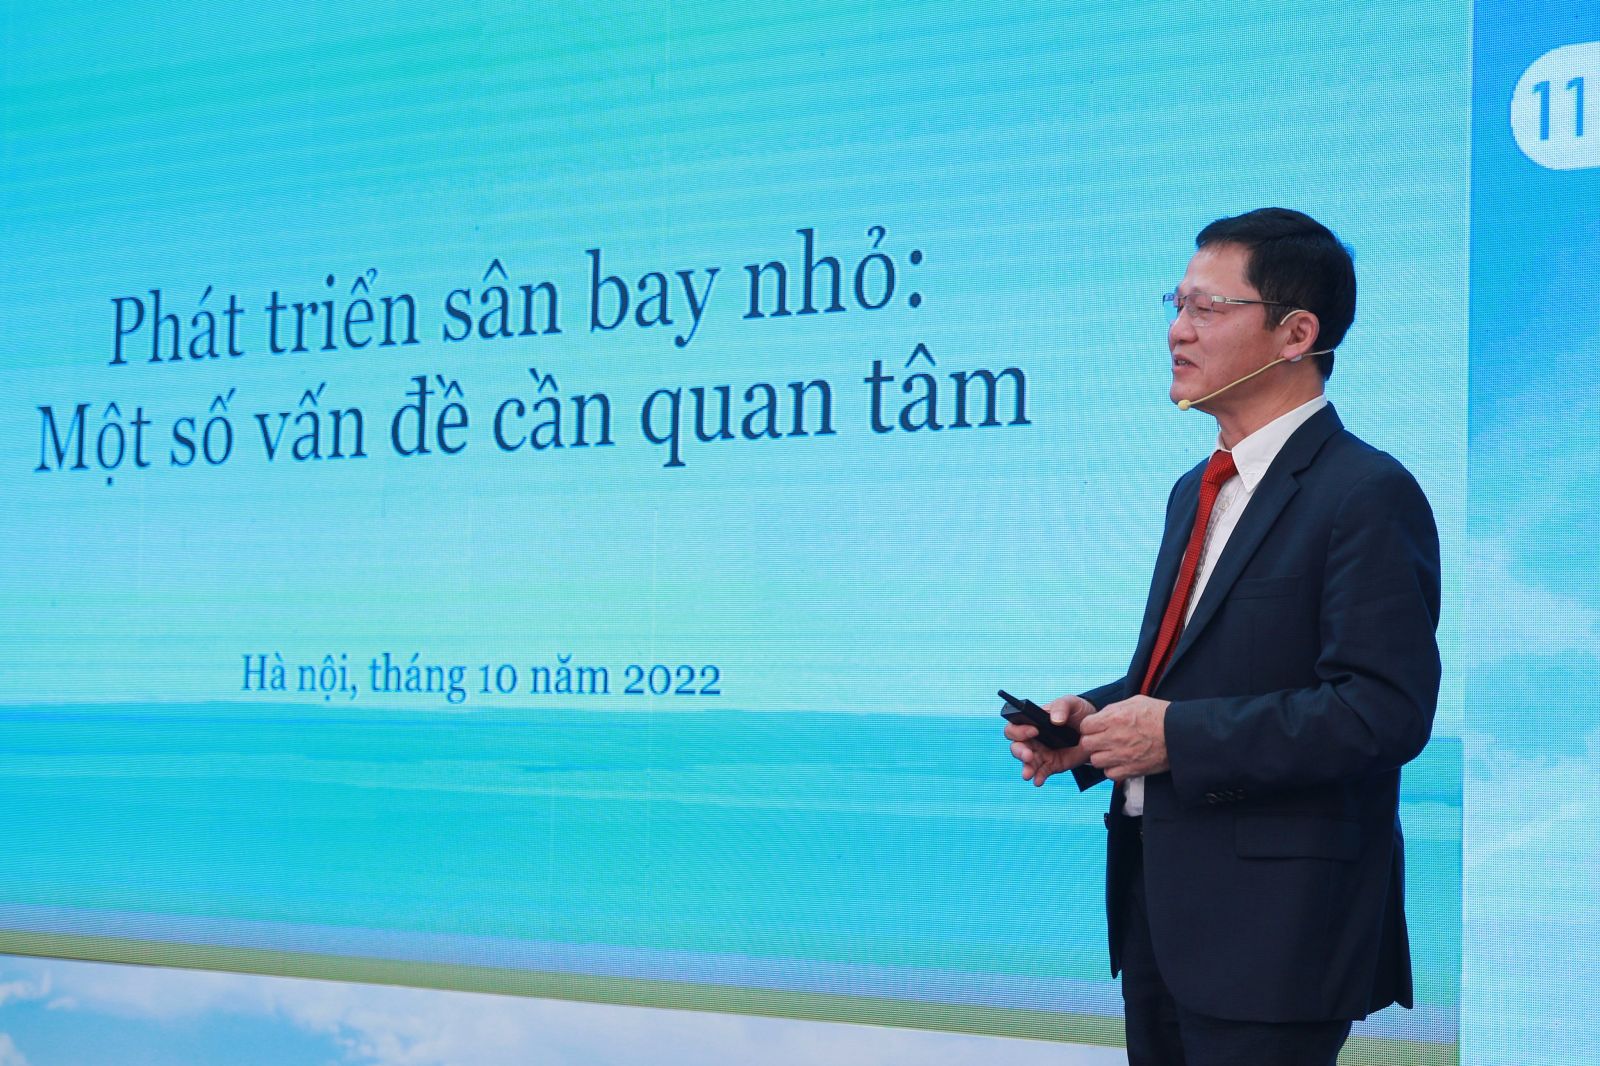 Phó Viện trưởng Viện Chiến lược phát triển Nguyễn Văn Vịnh trao đổi về một số vấn đề phát triển sân bay nhỏ